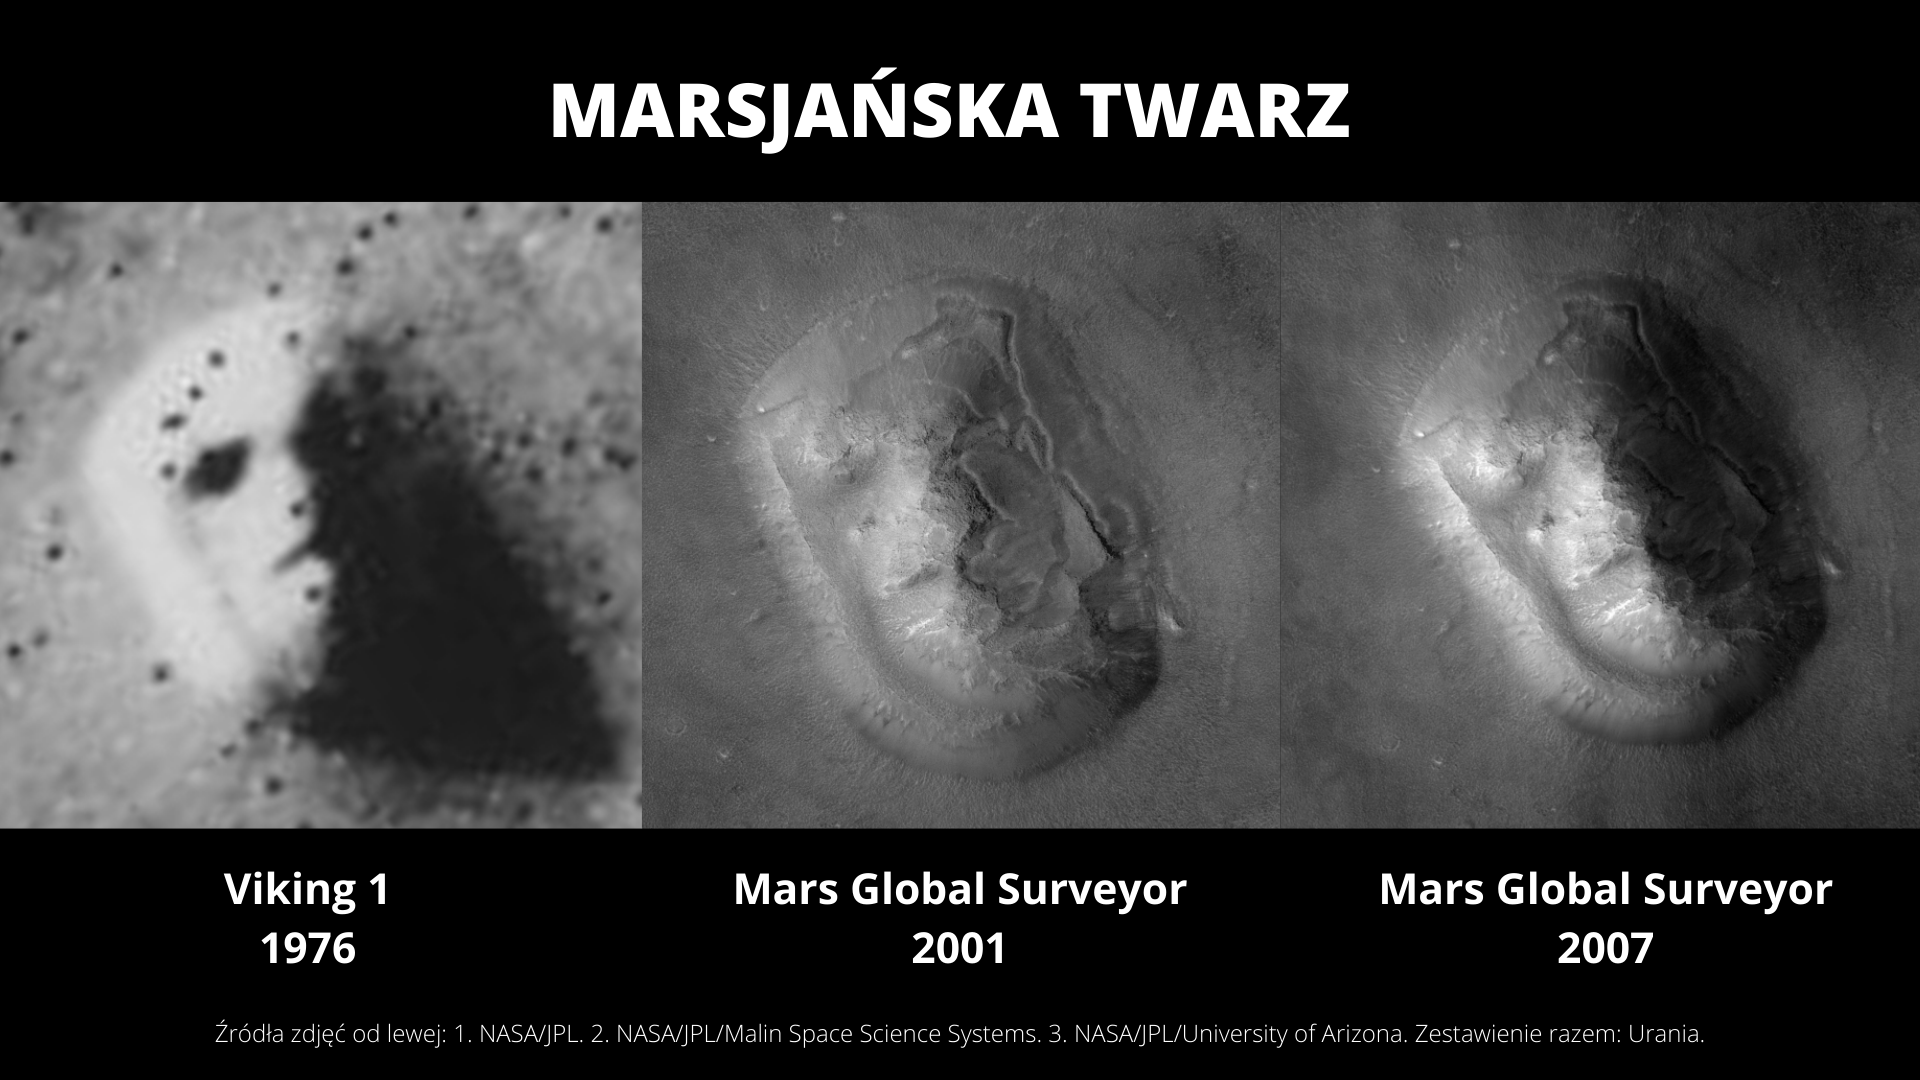 Marsjańska Twarz - porównanie zdjęć